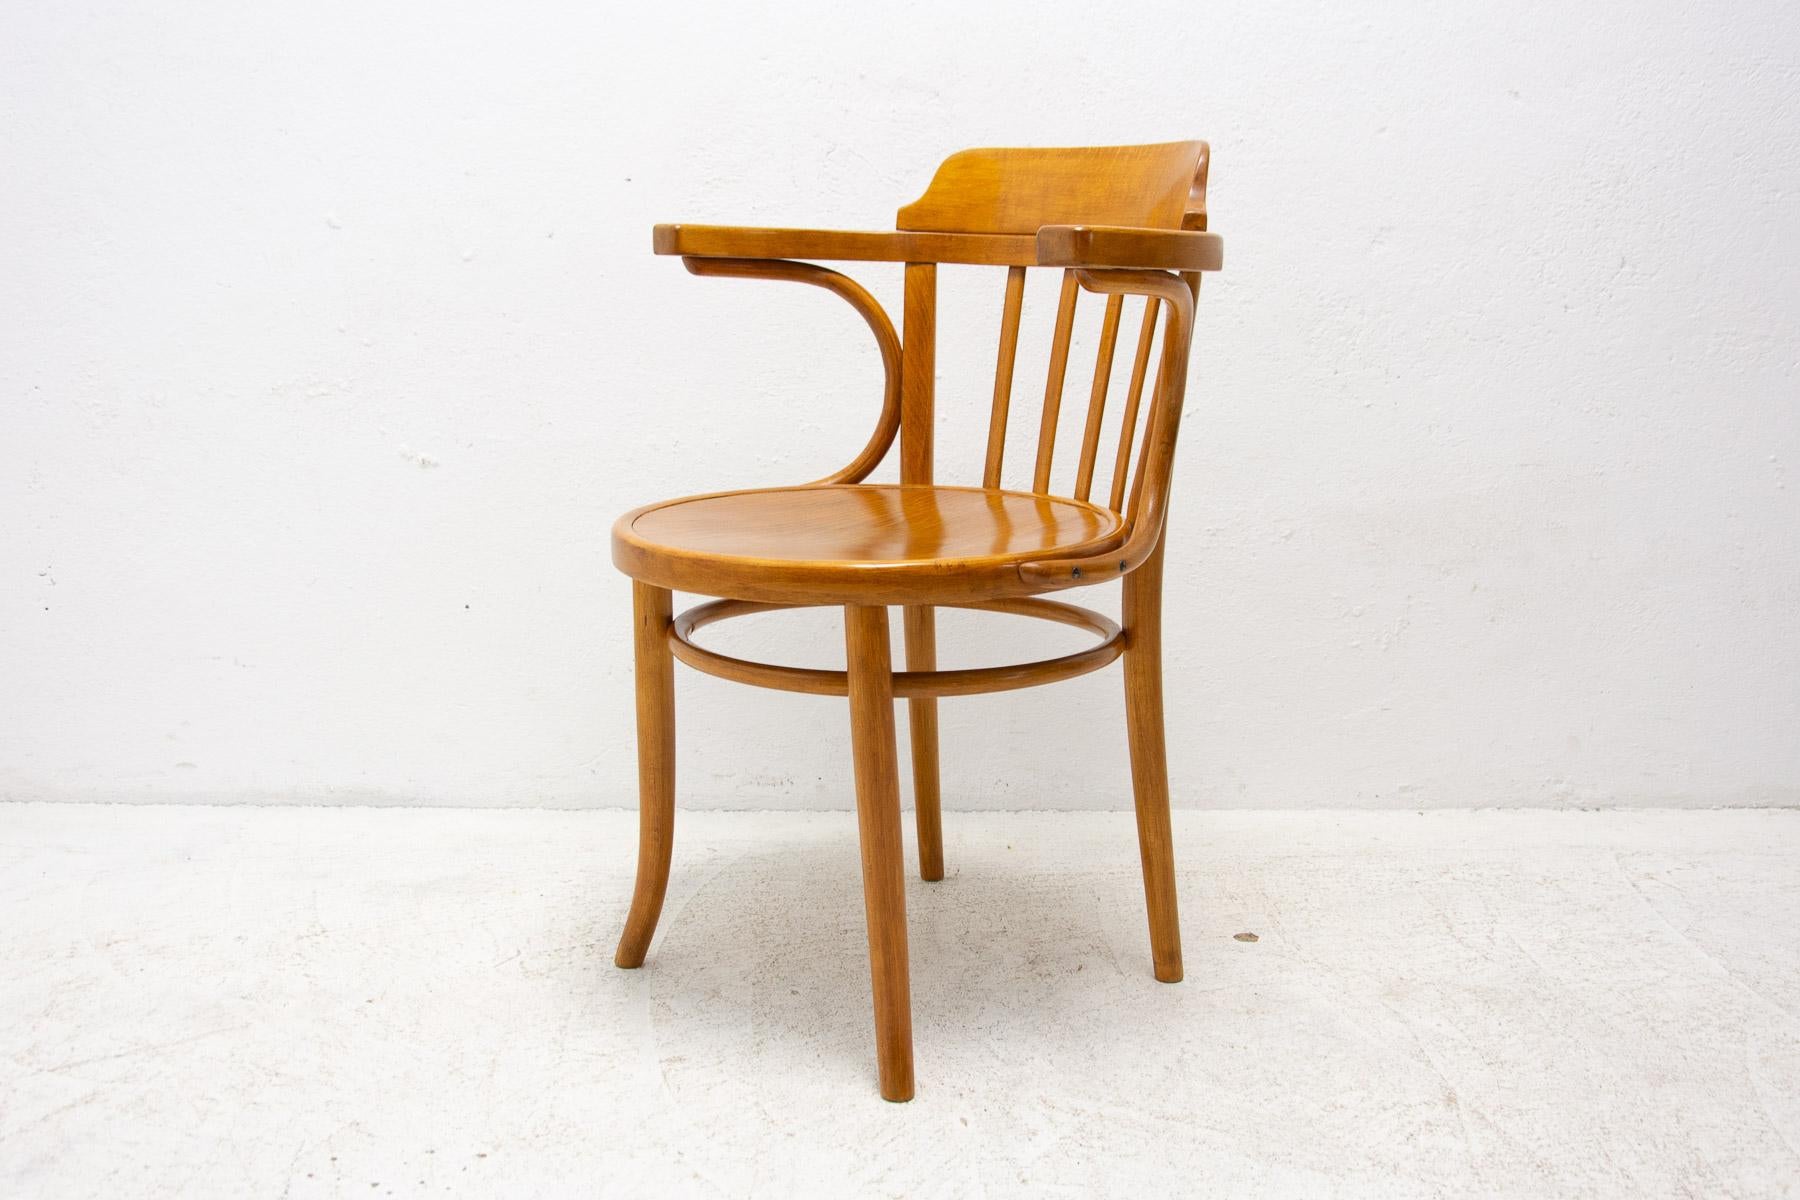 Cette chaise a été fabriquée par Thonet dans l'ancienne Tchécoslovaquie dans les années 1930. La marque Thonet est embossée sur le dessous du siège. Le fauteuil a été rénové et est en excellent état.

Mesures : Hauteur : 80 cm

Siège : 62×51